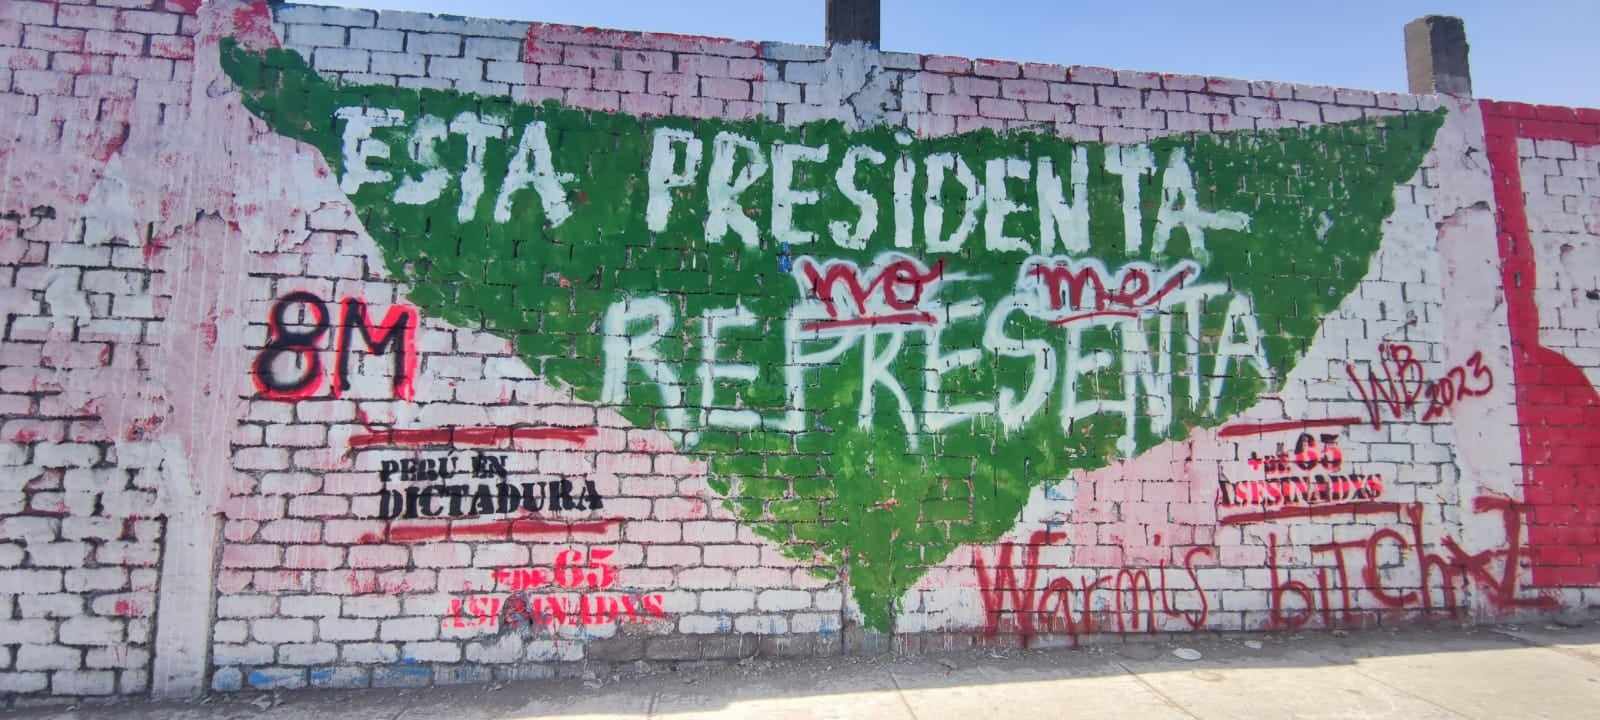 "Esta presidenta no me representa", escrito encima de un triángulo verde. Al lado: "Peru en dictadura".
Intervención urbana por el 8M del frente gráfico
WarmisBitchz, en Lima
Foto: cortesía de las WarmisBitchz.